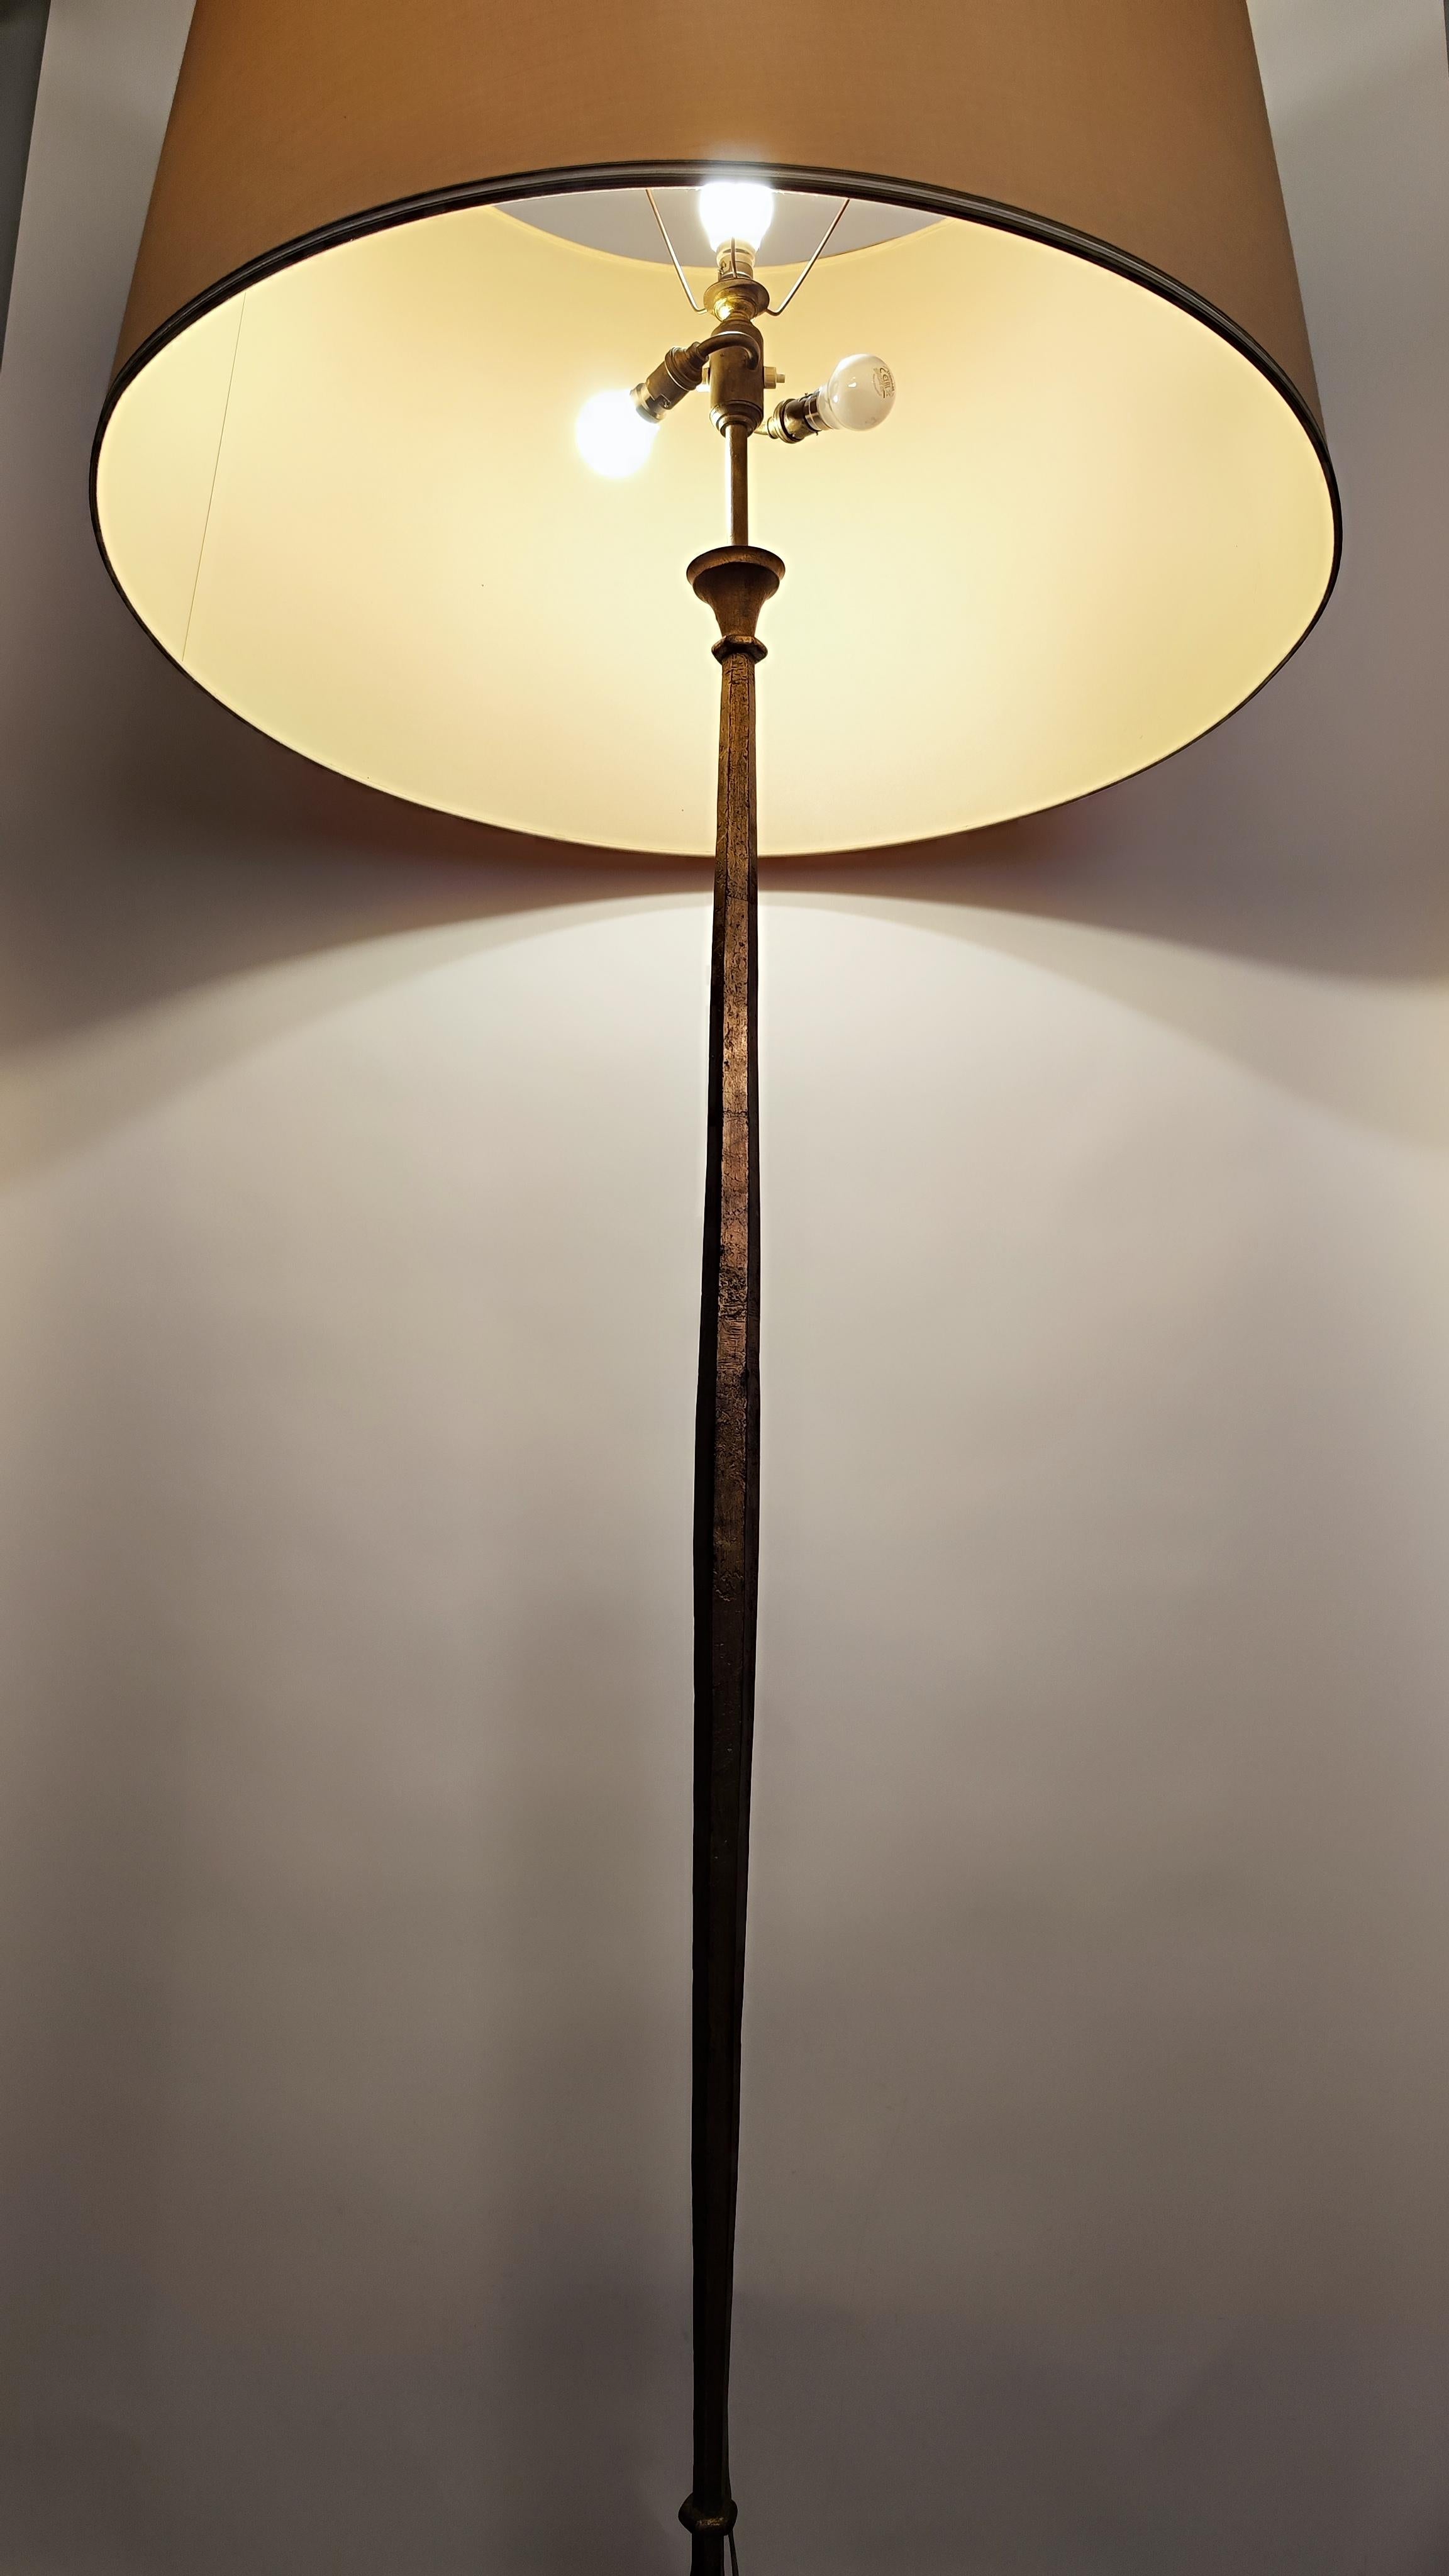 Stehleuchte aus vergoldetem Eisen aus der Mitte des Jahrhunderts, entworfen und hergestellt von Maison Ramsay, Paris, Frankreich, um 1950-1960. 
.
Die Linien sind sehr sauber und präzise; die Lampe ist aus vergoldetem, geschlagenem Eisen